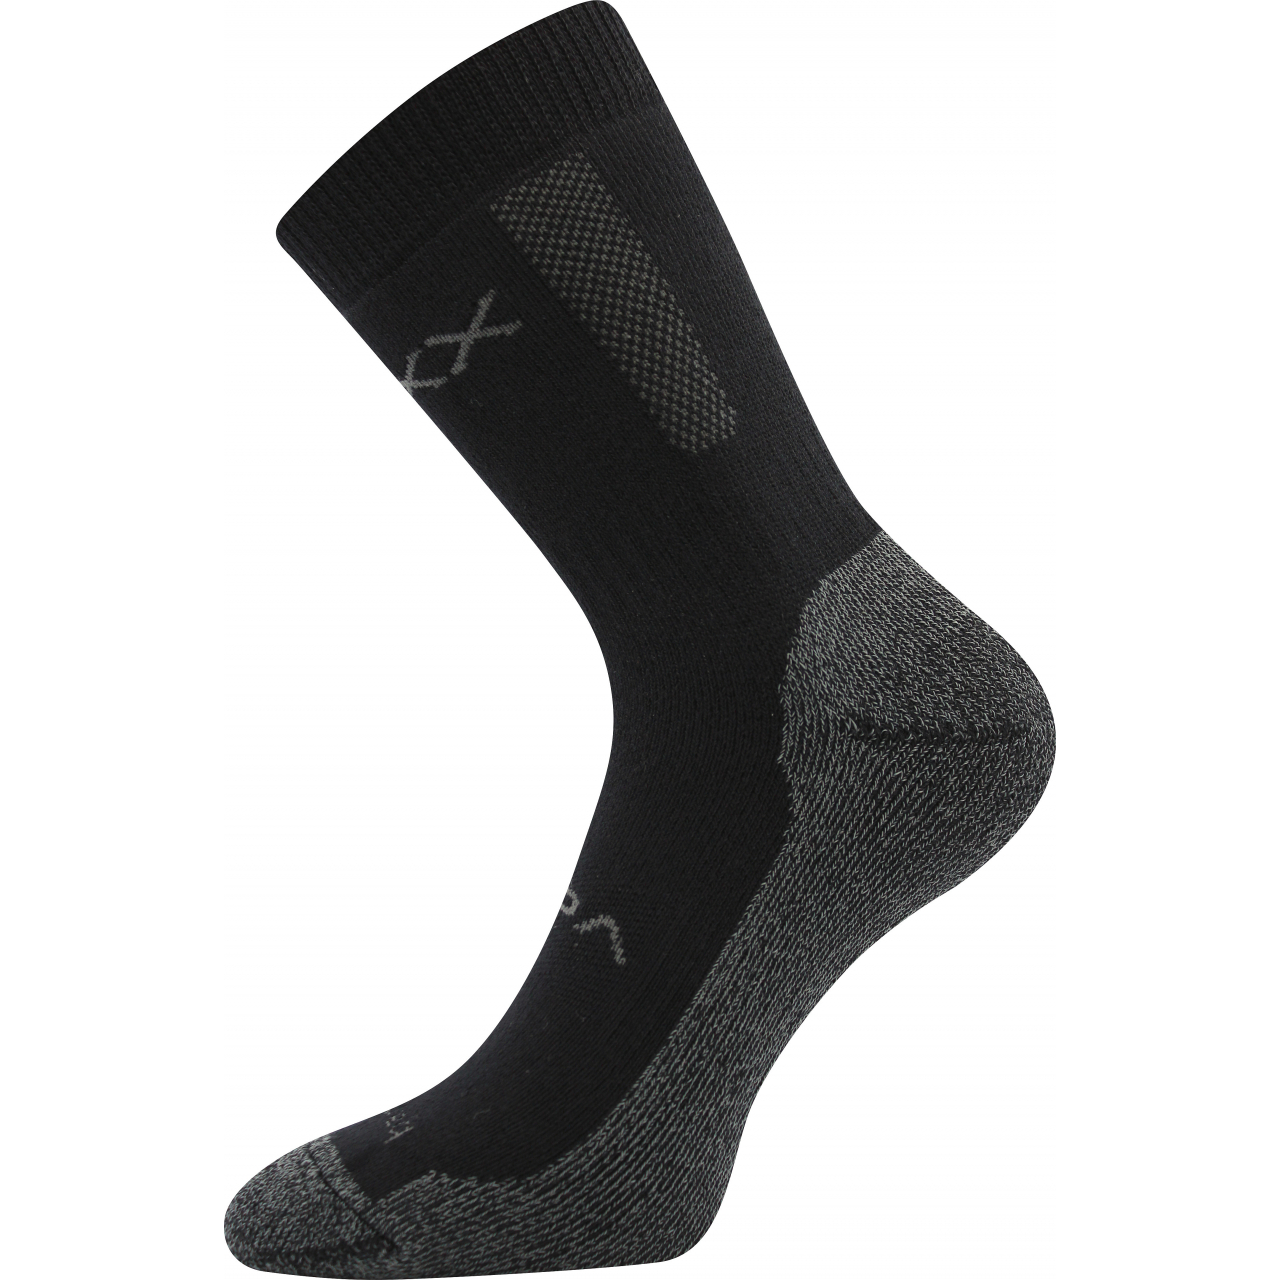 Ponožky silné unisex Voxx Bardee - černé, 39-42